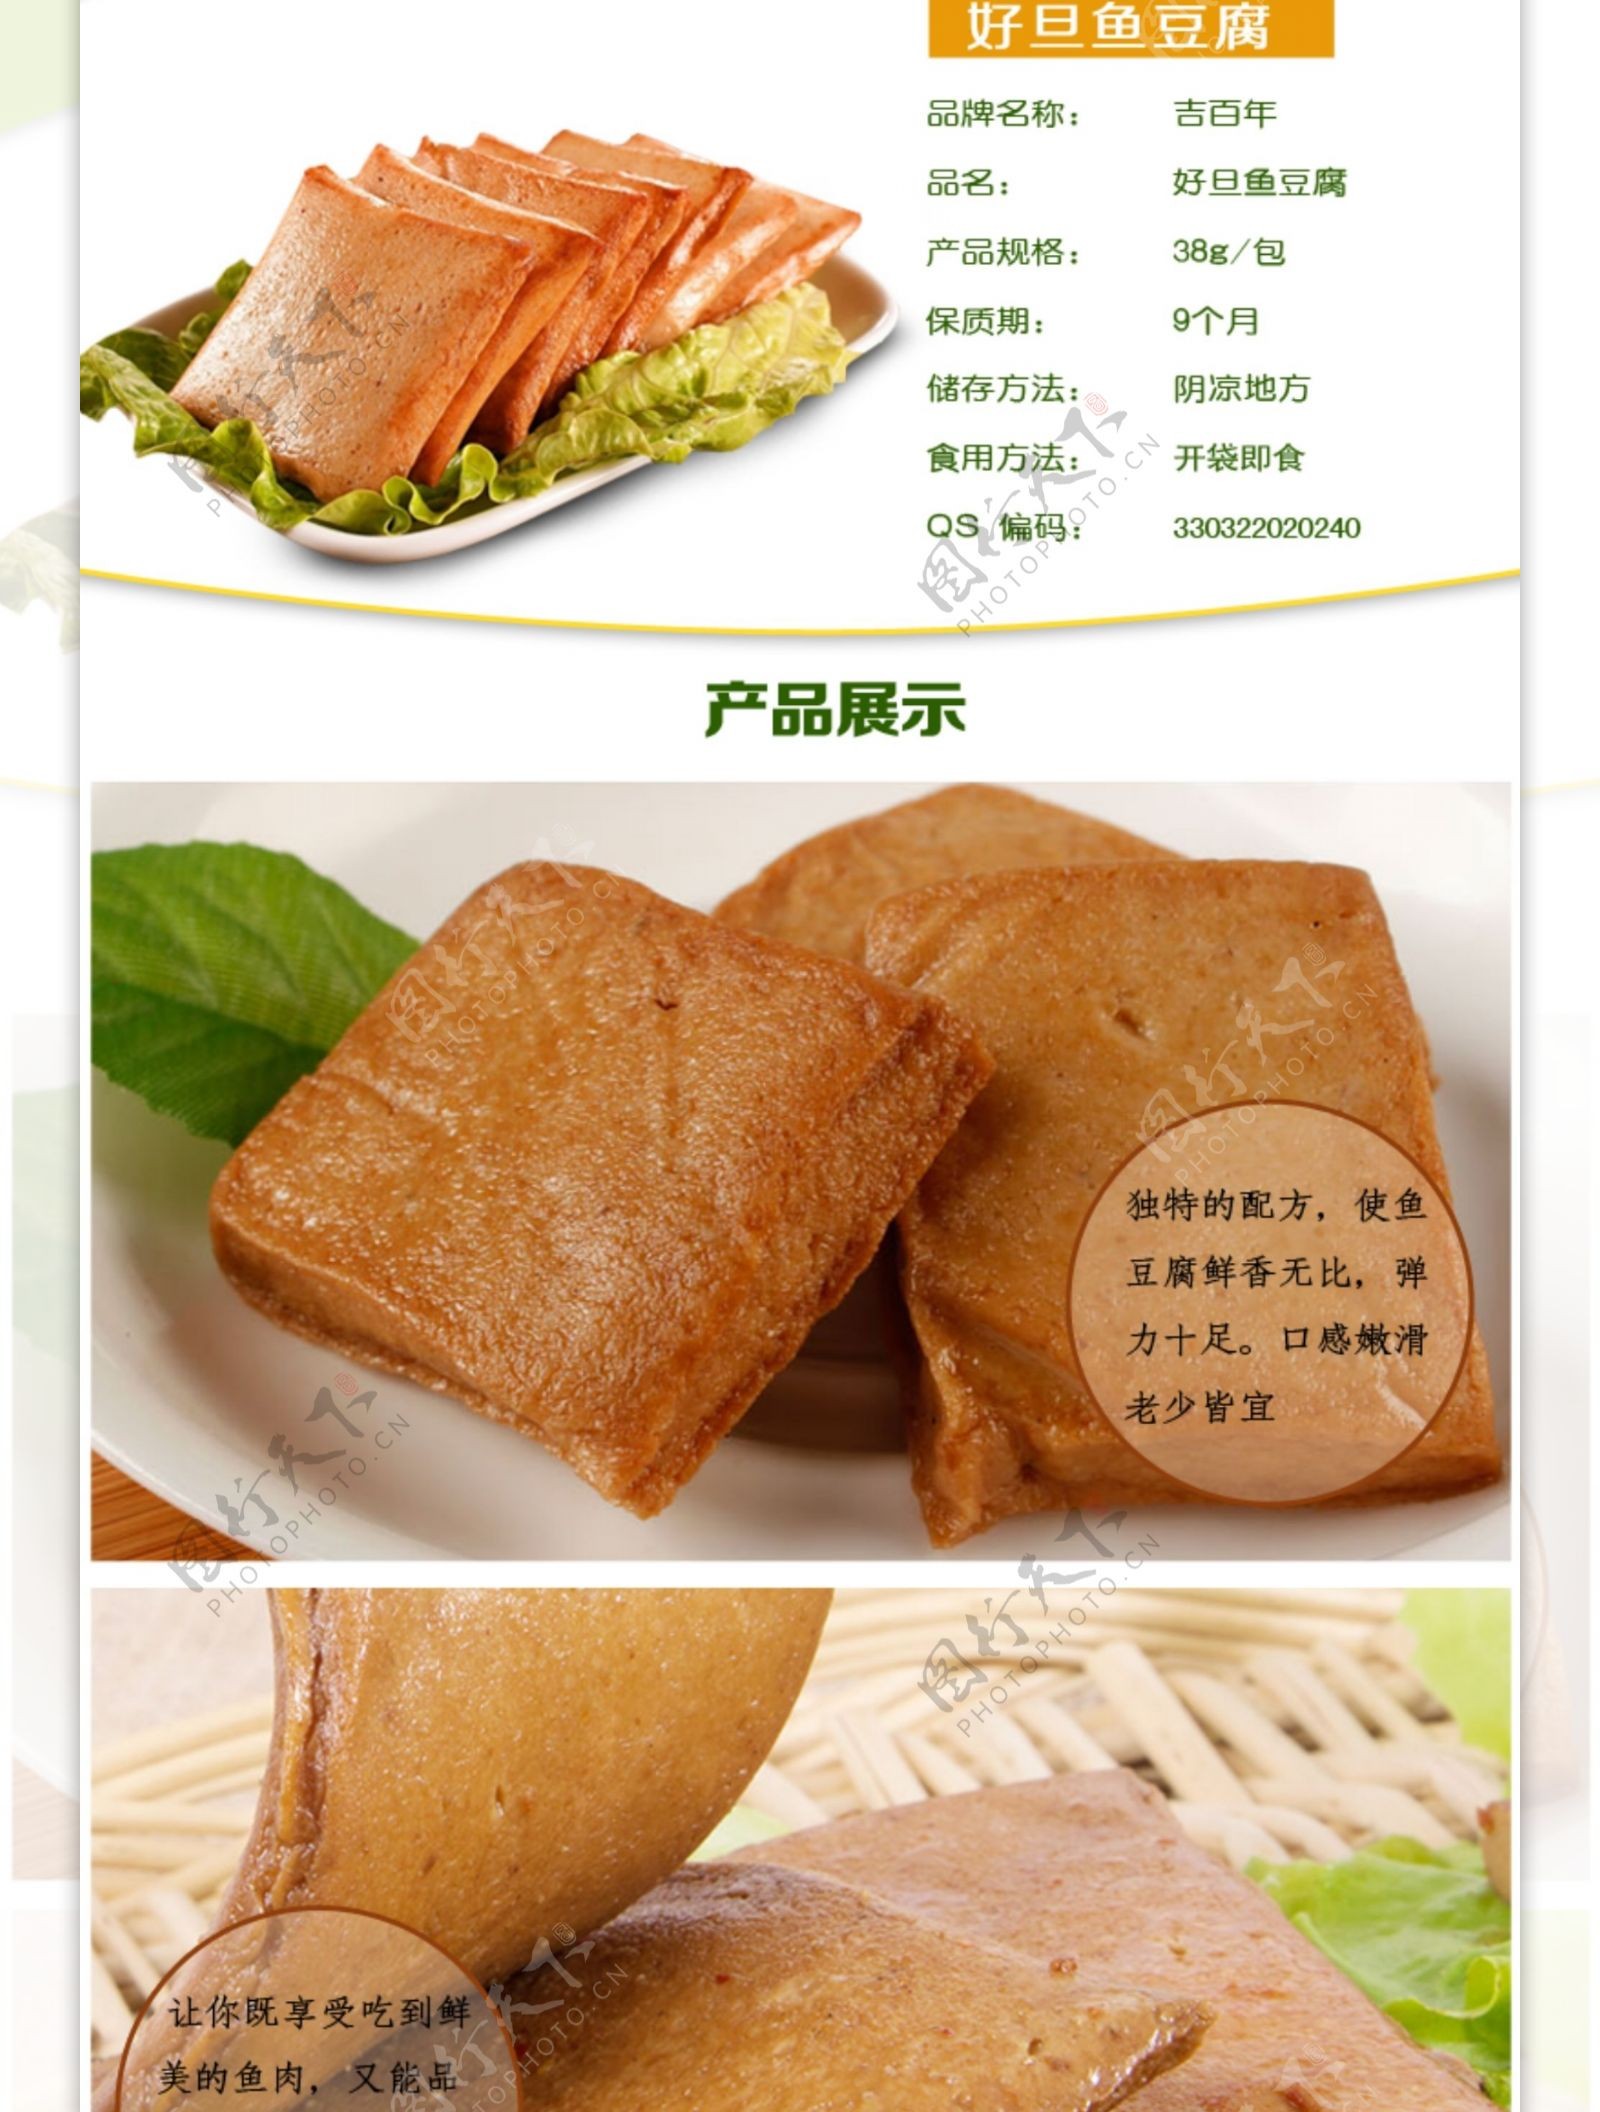 鱼豆腐食品零食淘宝详情页